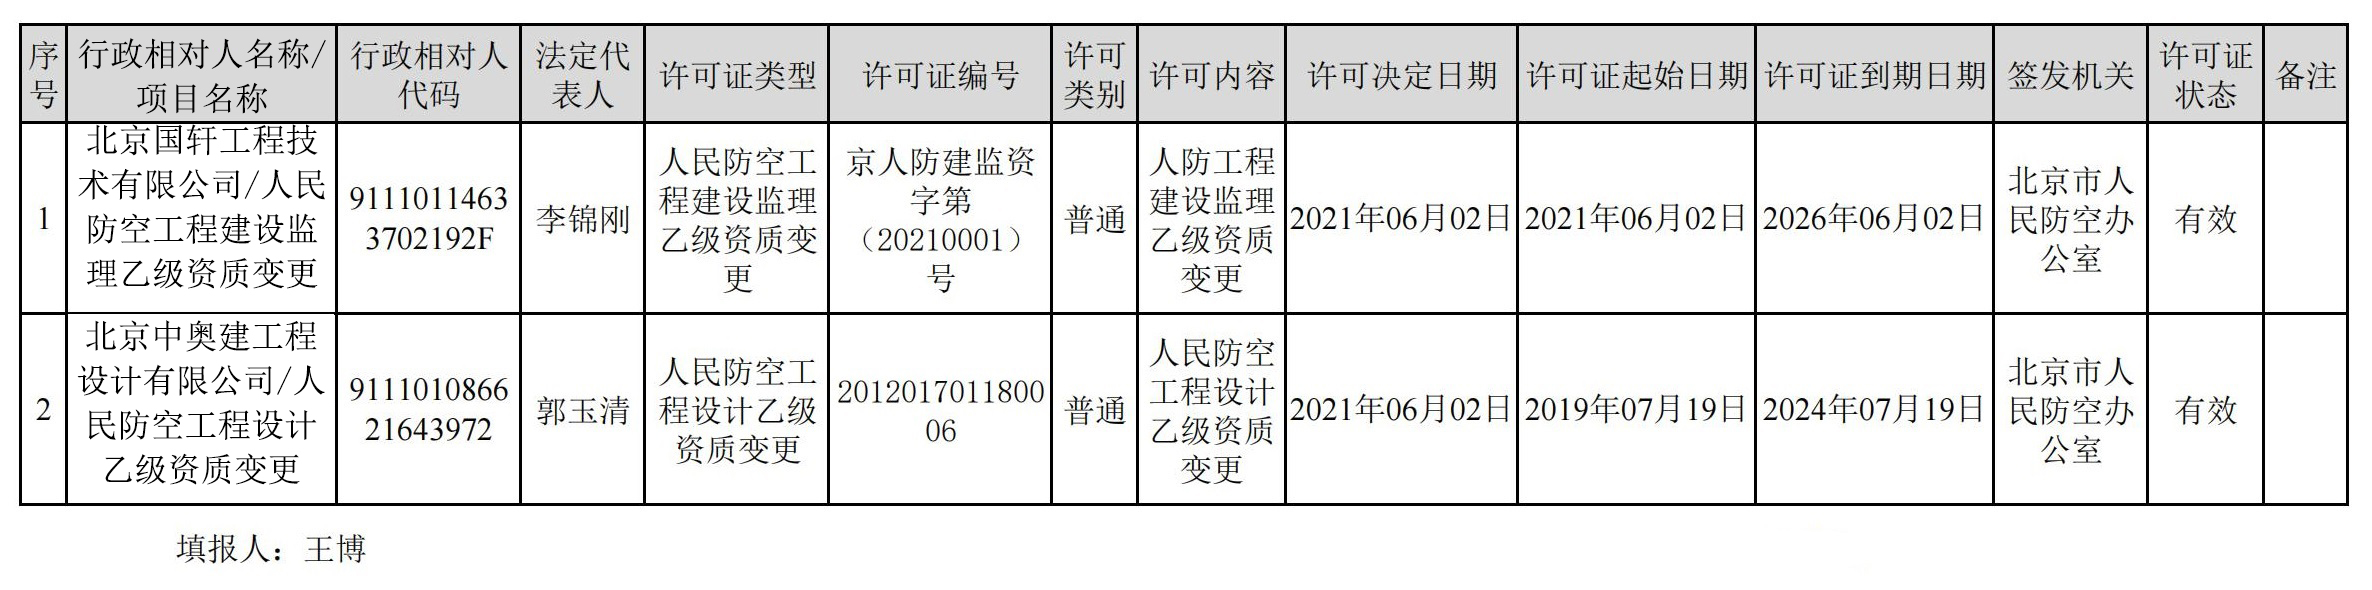 2021京防工准字数据统计(2021.05.31-2021.06.4)-改.jpg